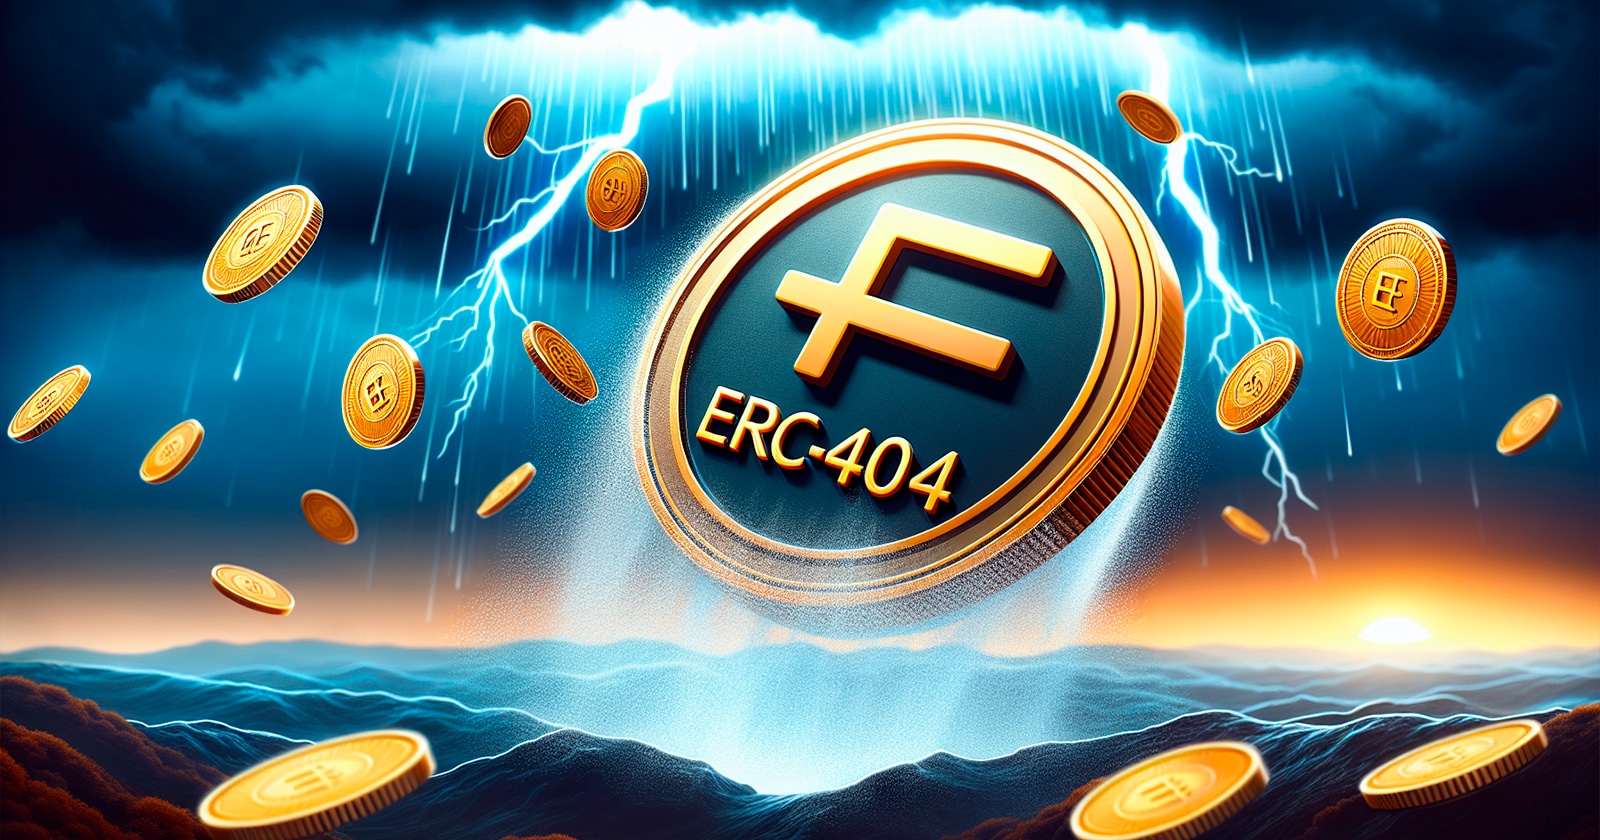 tokens-erc-404-enfrentam-volatilibidade